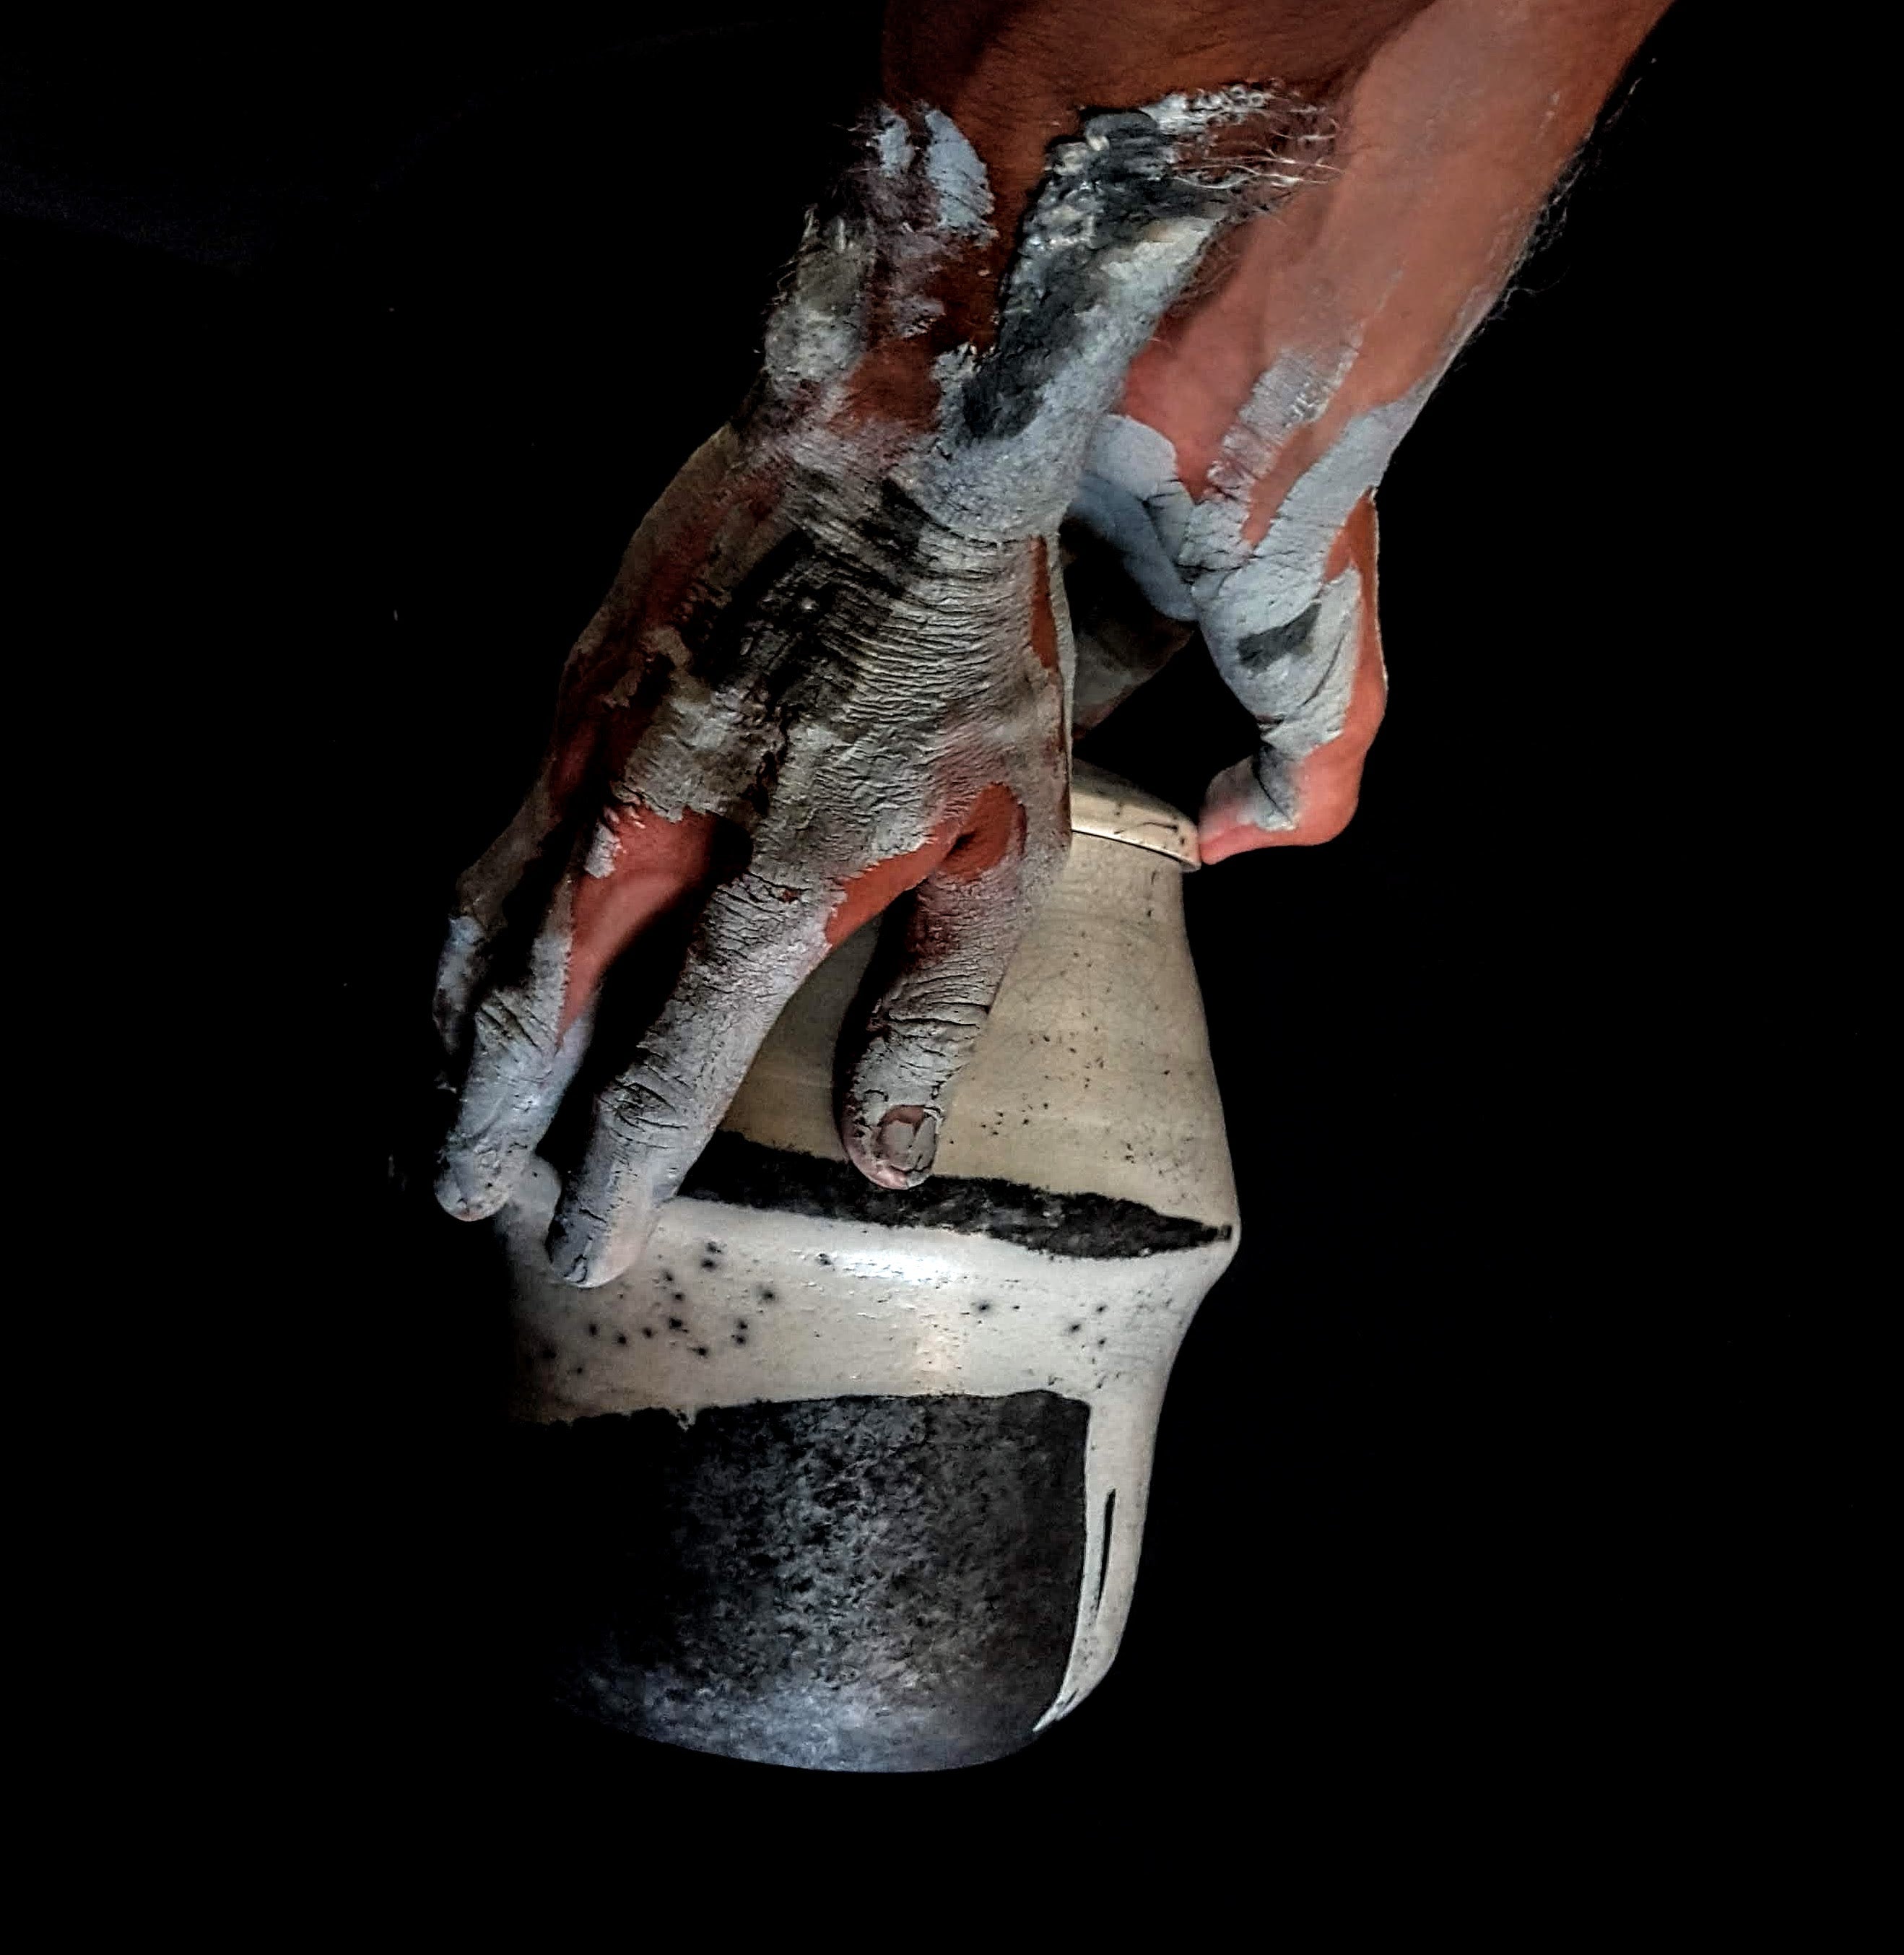 Black & White Unity Cremation Urn | Cremation Urn For Human Ashes | Fine Art Urn | Artistic Unique Urn | Wabi Sabi Urn | Urne für Asche